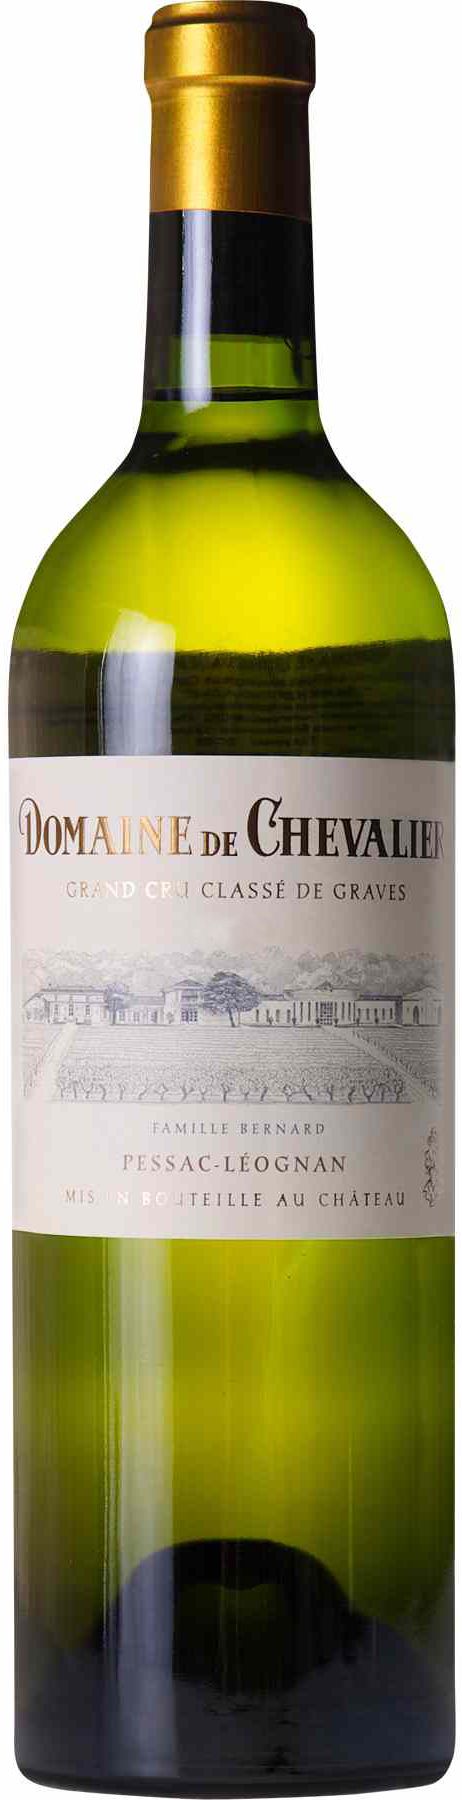 Domaine De Chevalier, Blanc, 2005